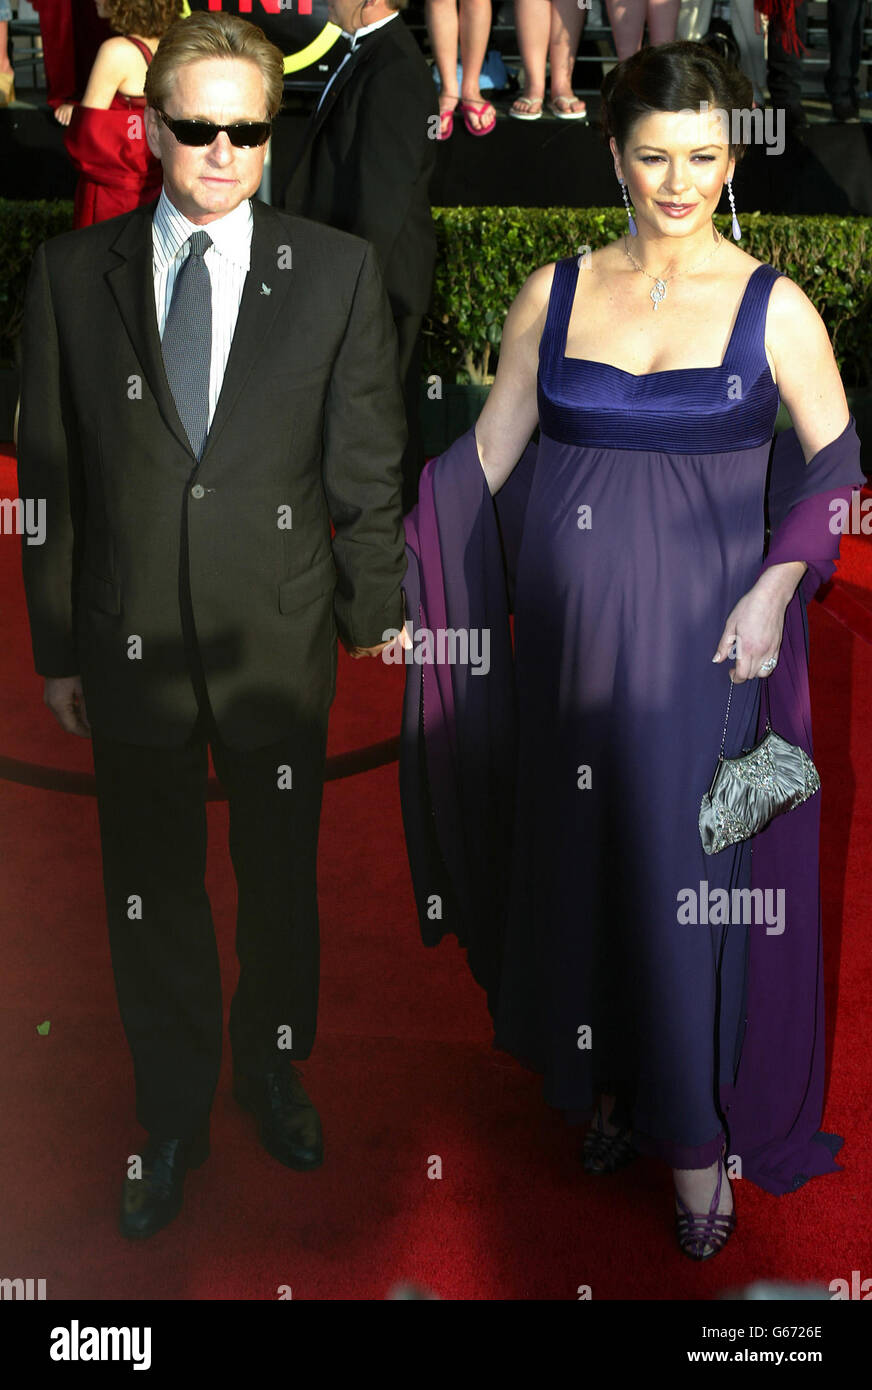 Gli attori Michael Douglas e Catherine Zeta-Jones arrivano sul tappeto rosso per il nono schermo annuale attori Guild Awards al Shrine Auditorium di Los Angeles. Foto Stock